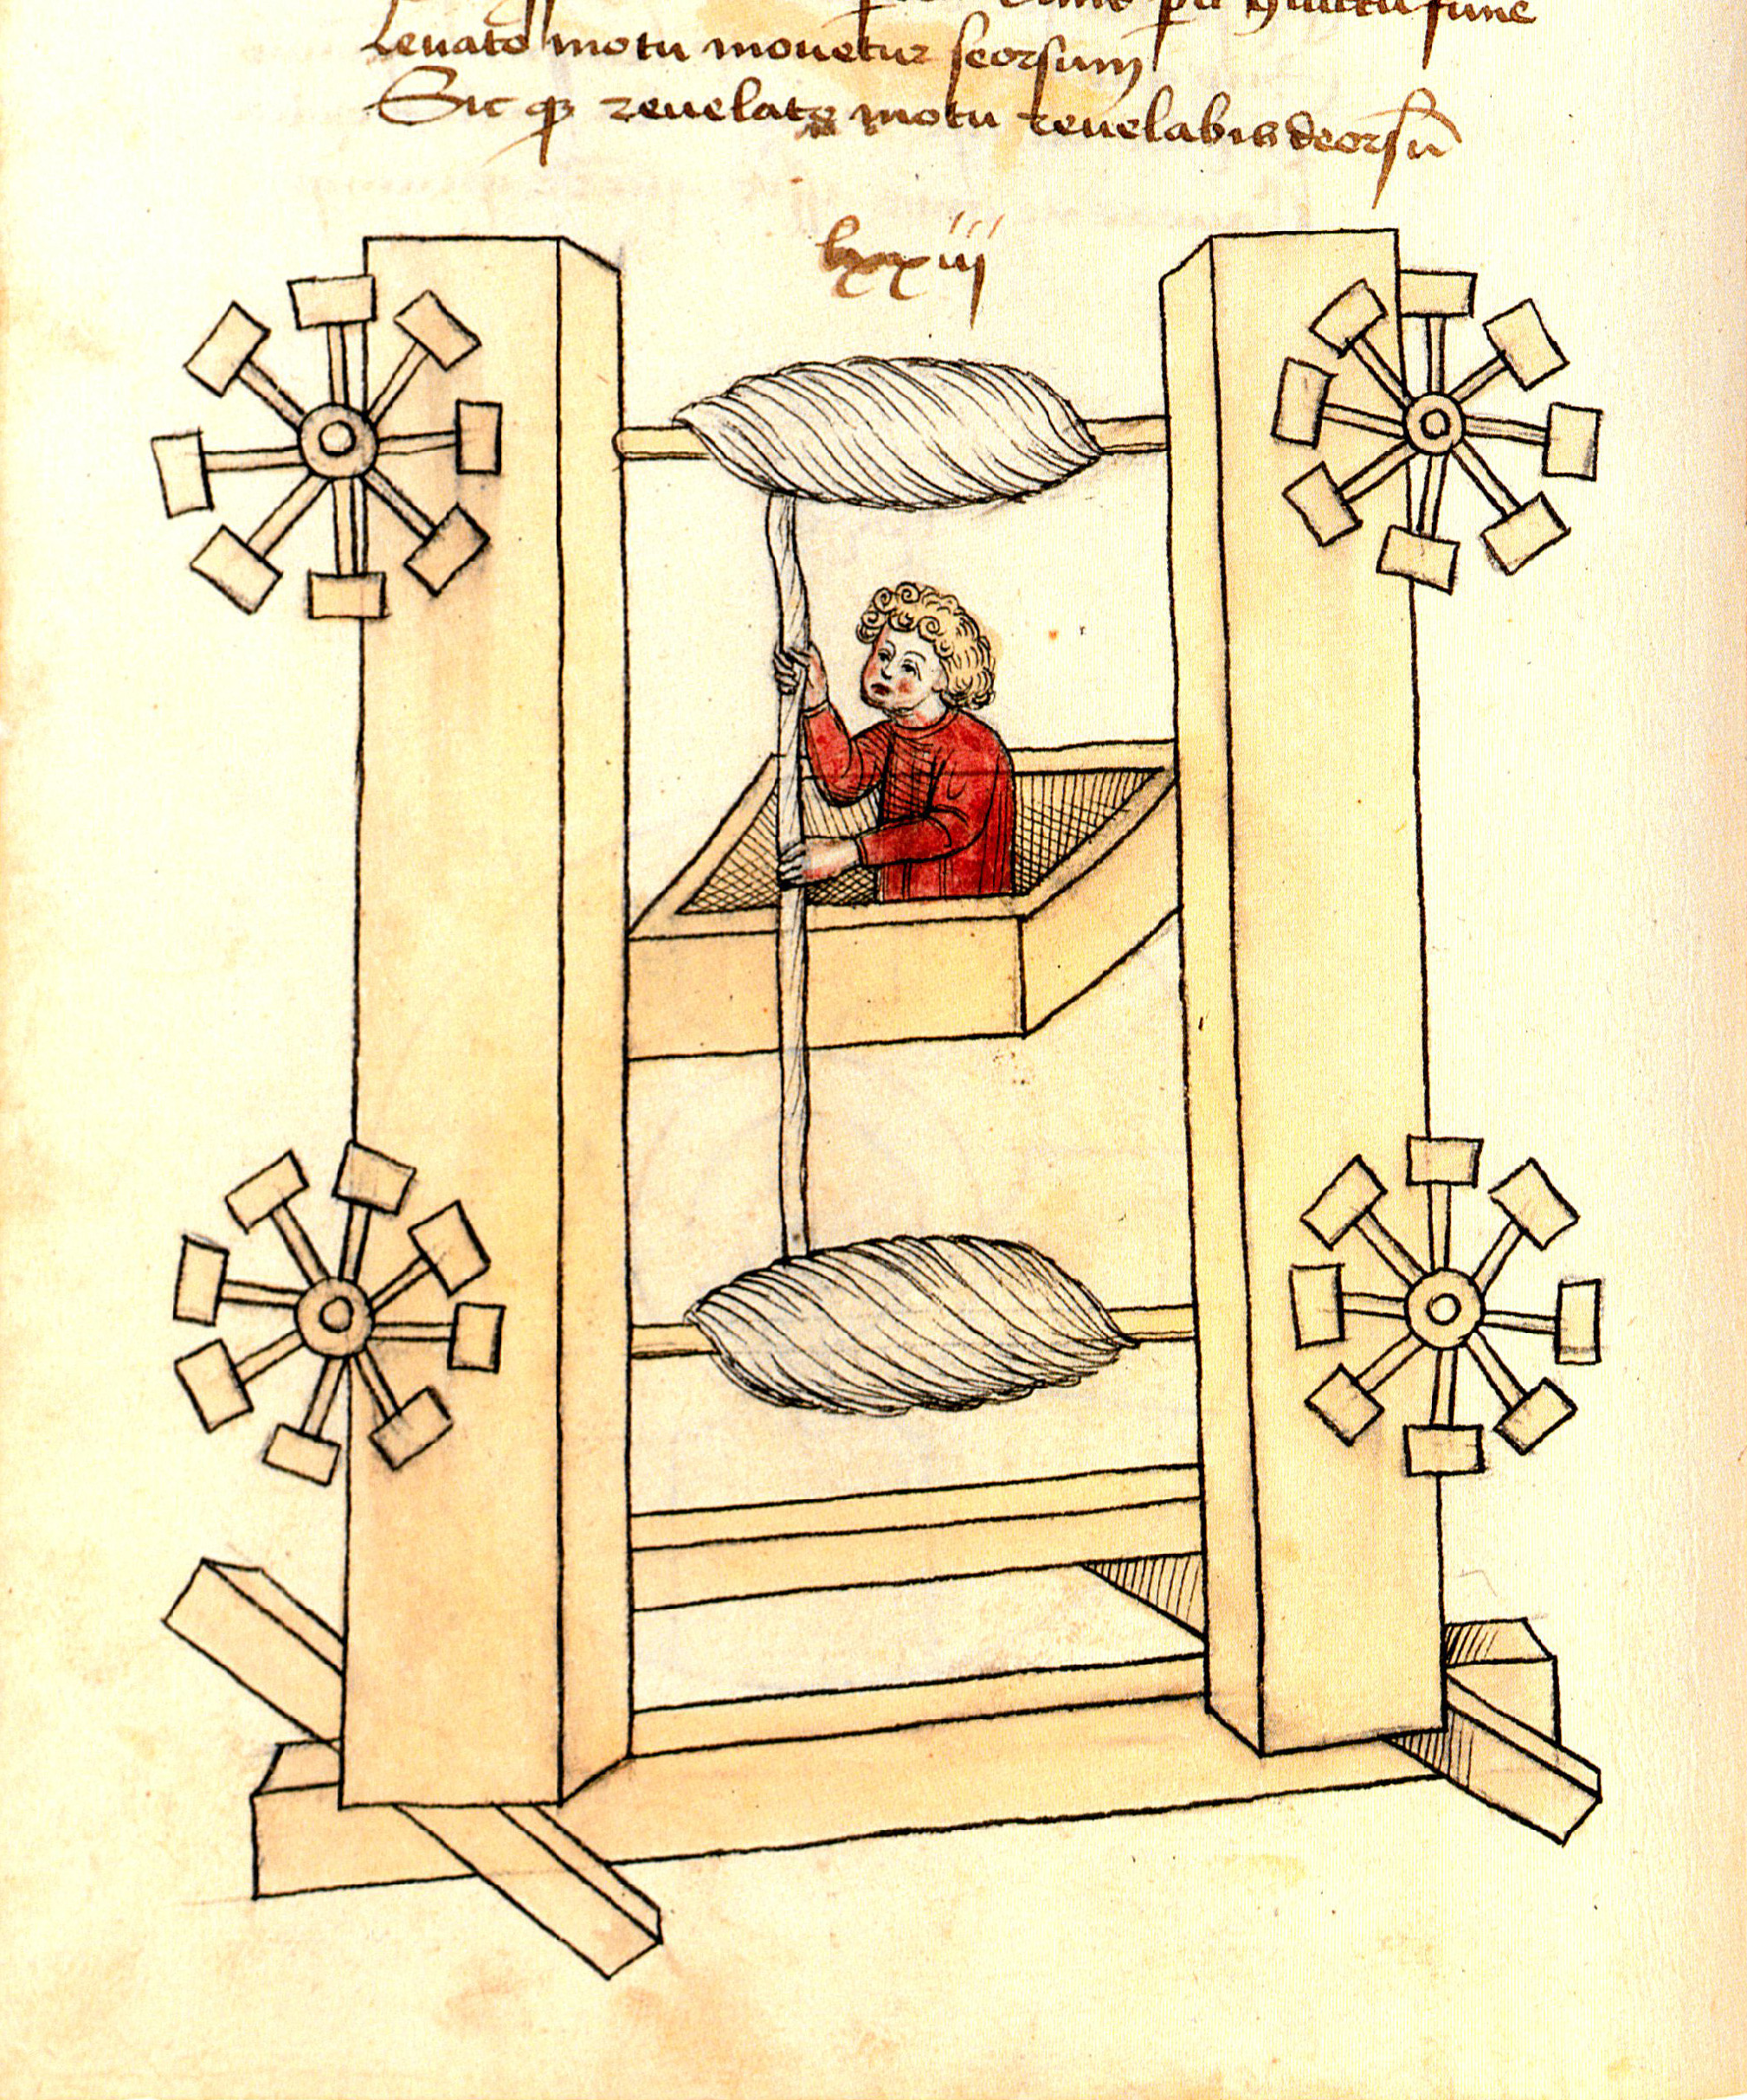 Prototipo de un ascensor, en el siglo XV